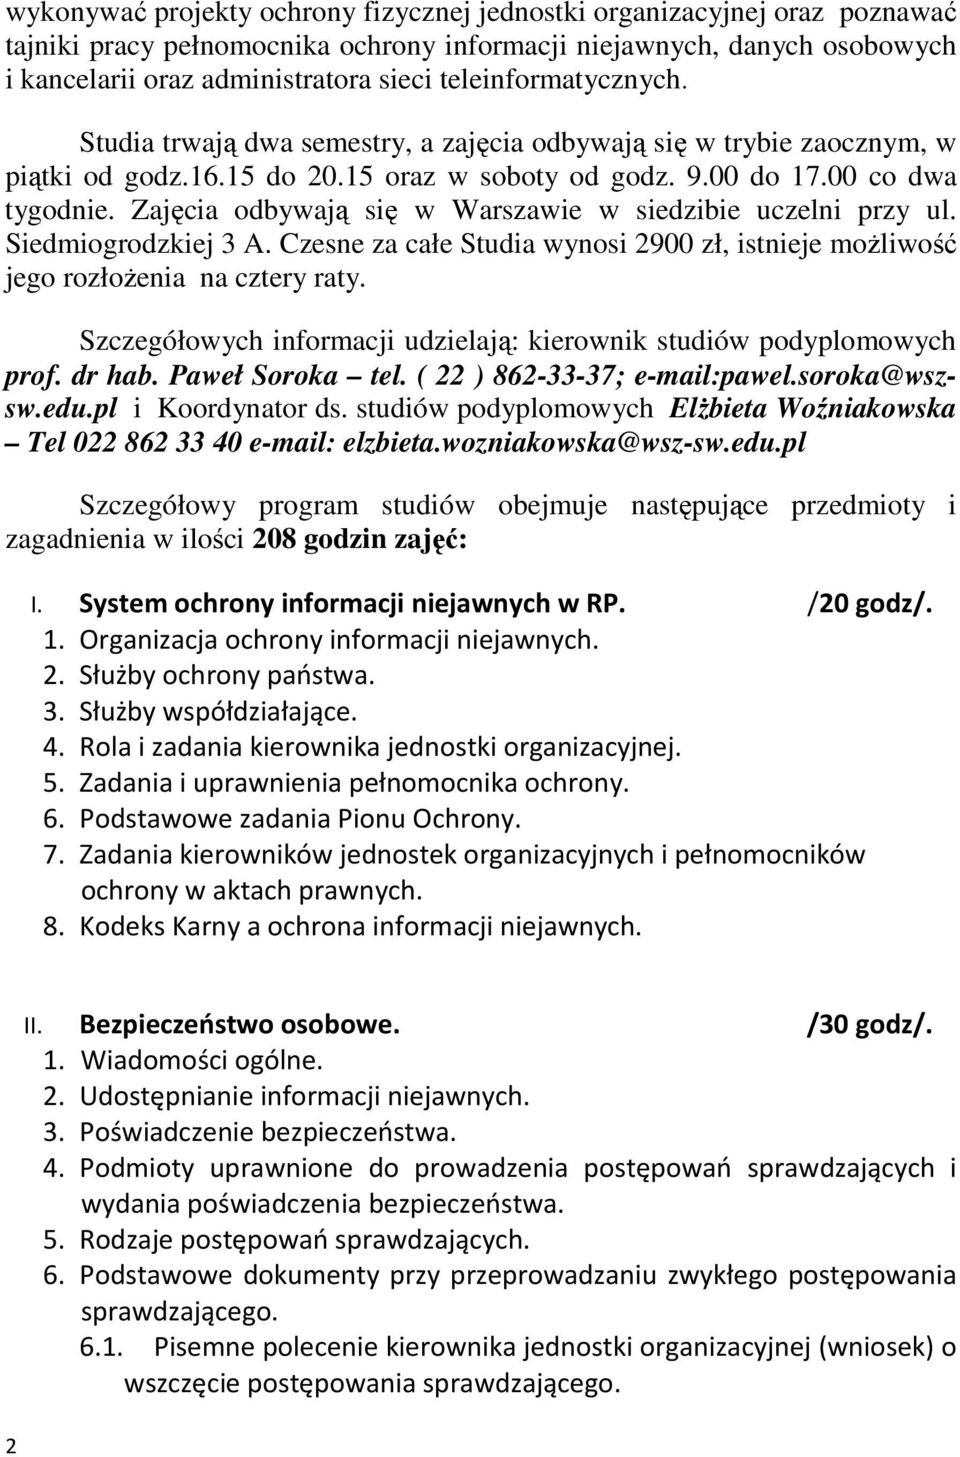 Zajęcia odbywają się w Warszawie w siedzibie uczelni przy ul. Siedmiogrodzkiej 3 A. Czesne za całe Studia wynosi 2900 zł, istnieje moŝliwość jego rozłoŝenia na cztery raty.